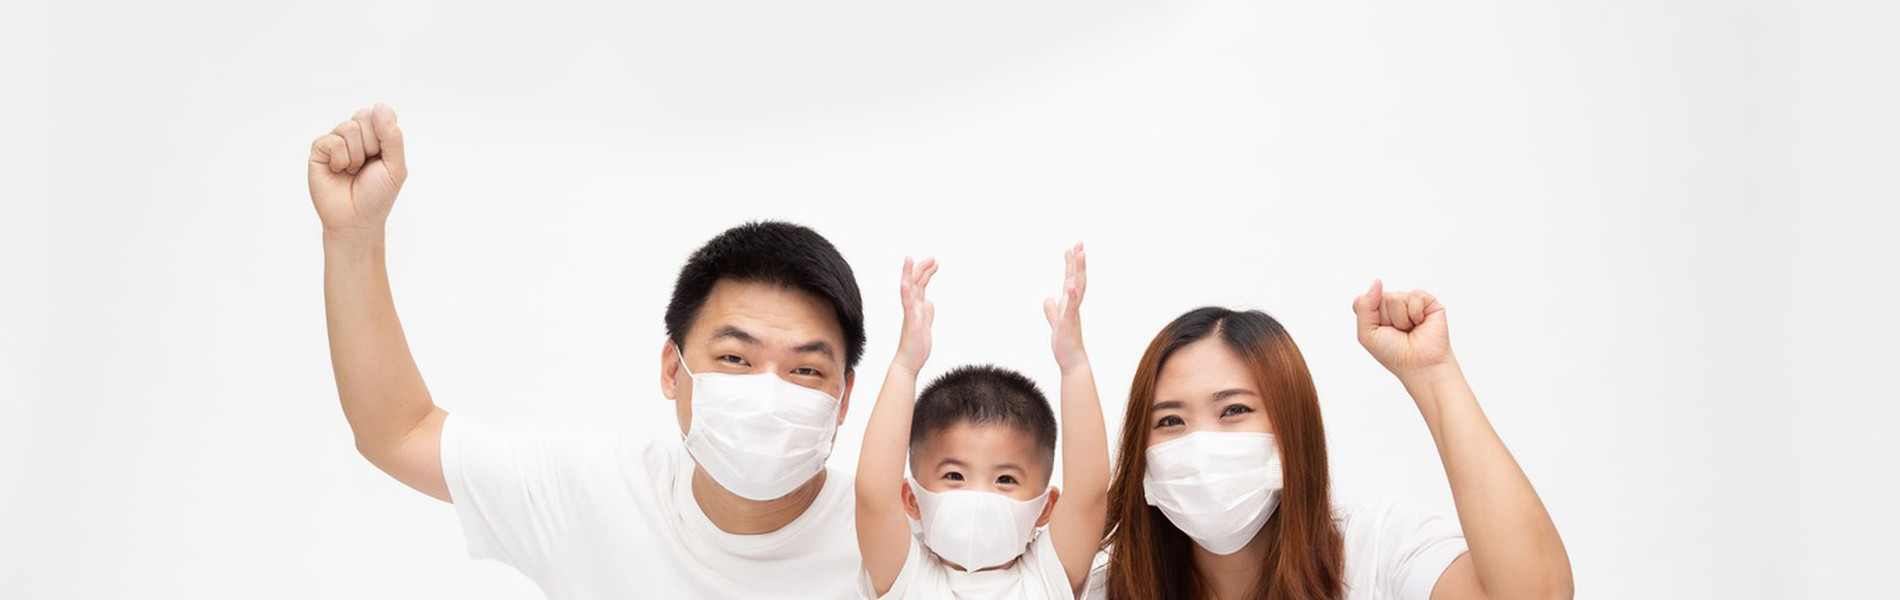 7 Tips Memilih Asuransi Kesehatan Terbaik di Masa Pandemi COVID-19.jpg